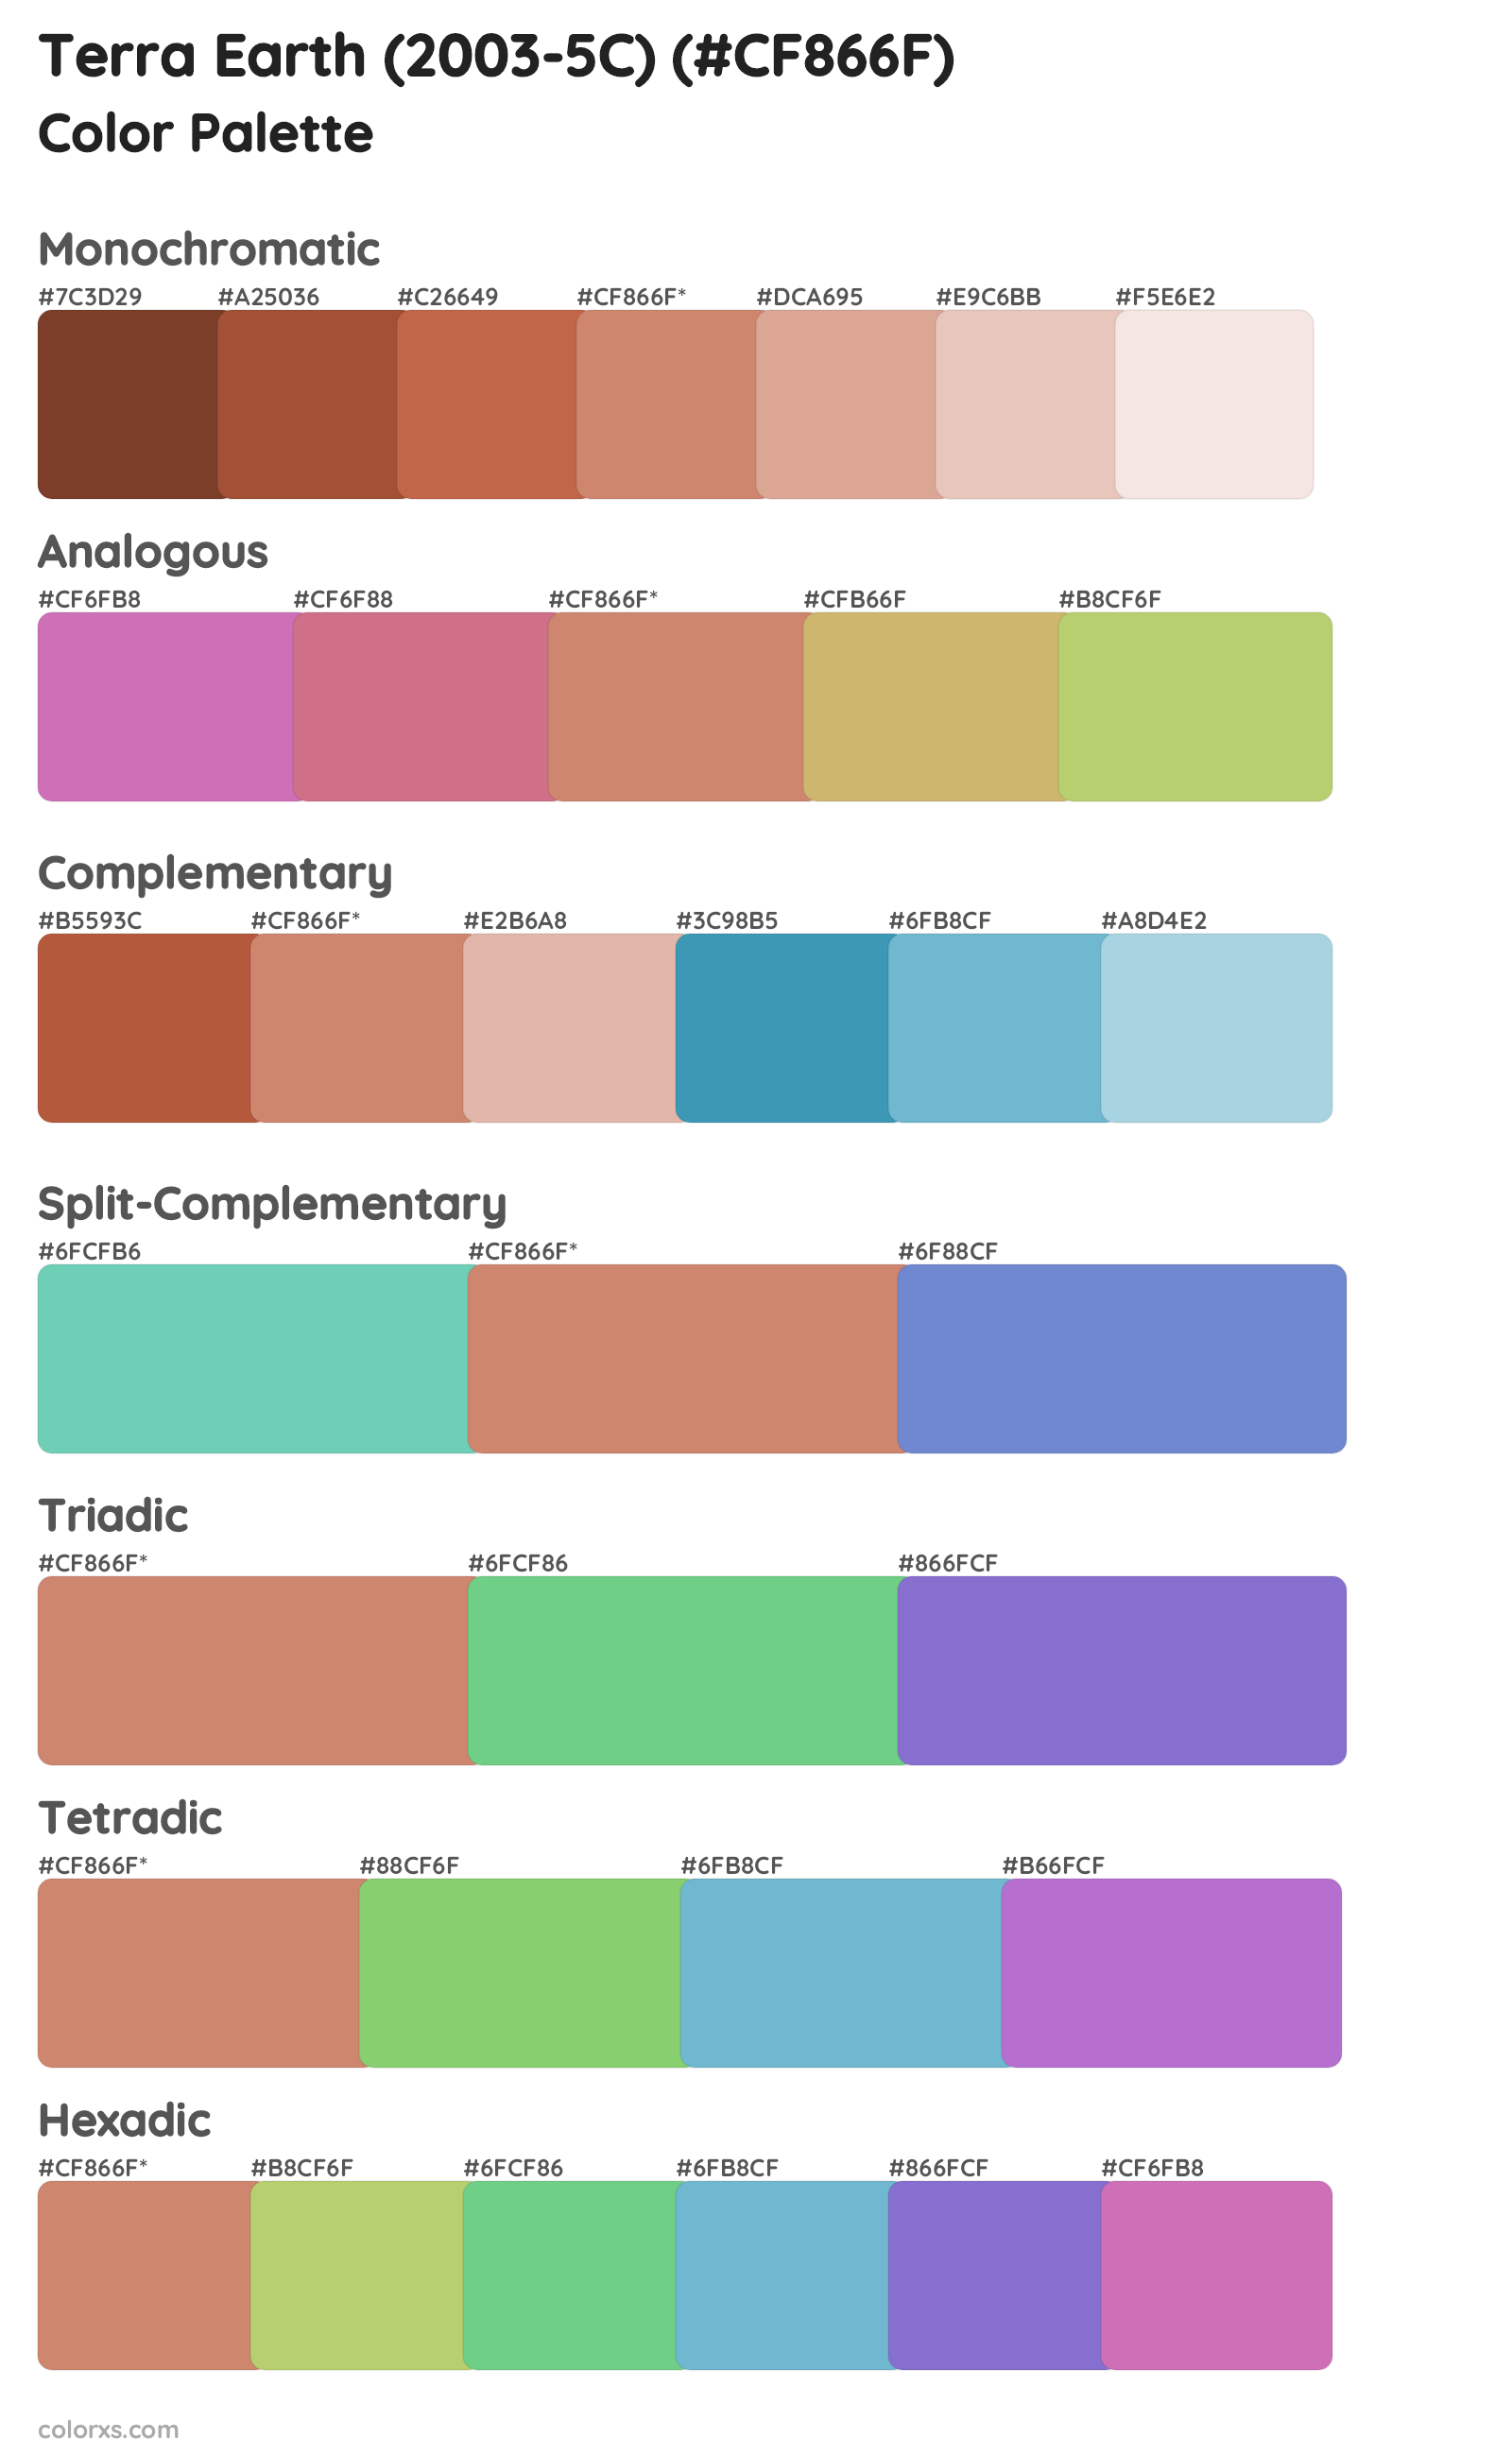 Terra Earth (2003-5C) Color Scheme Palettes